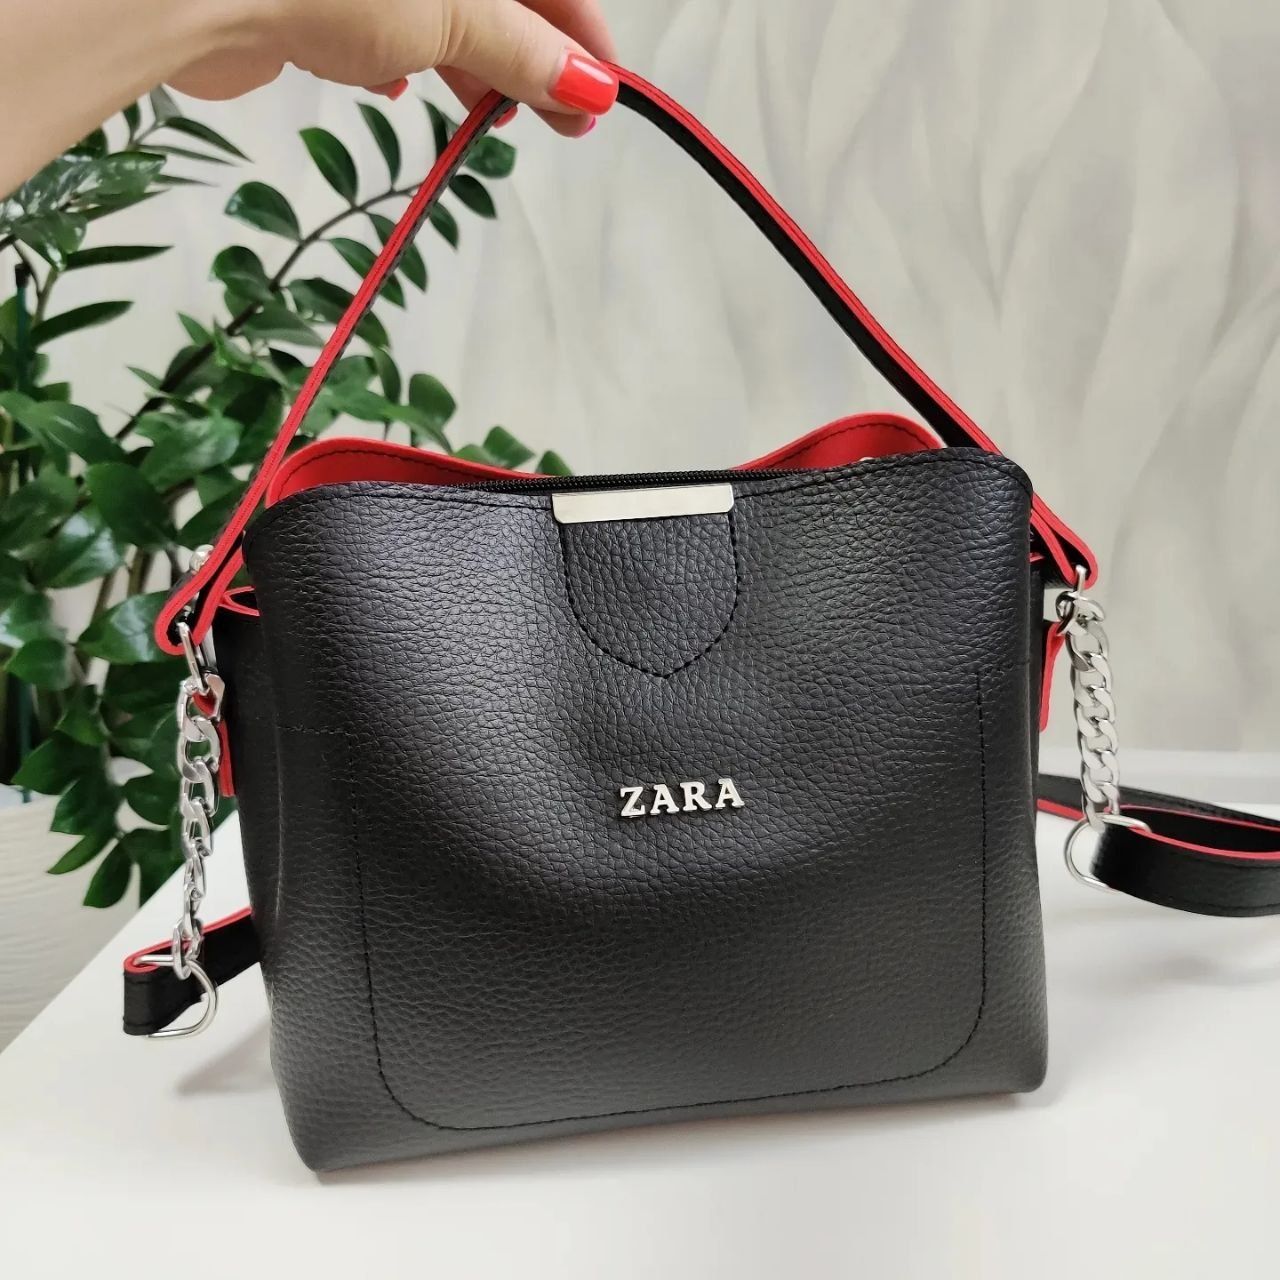 Гарна  жіноча сумочка, женская сумочка, сумка в стиле Zara